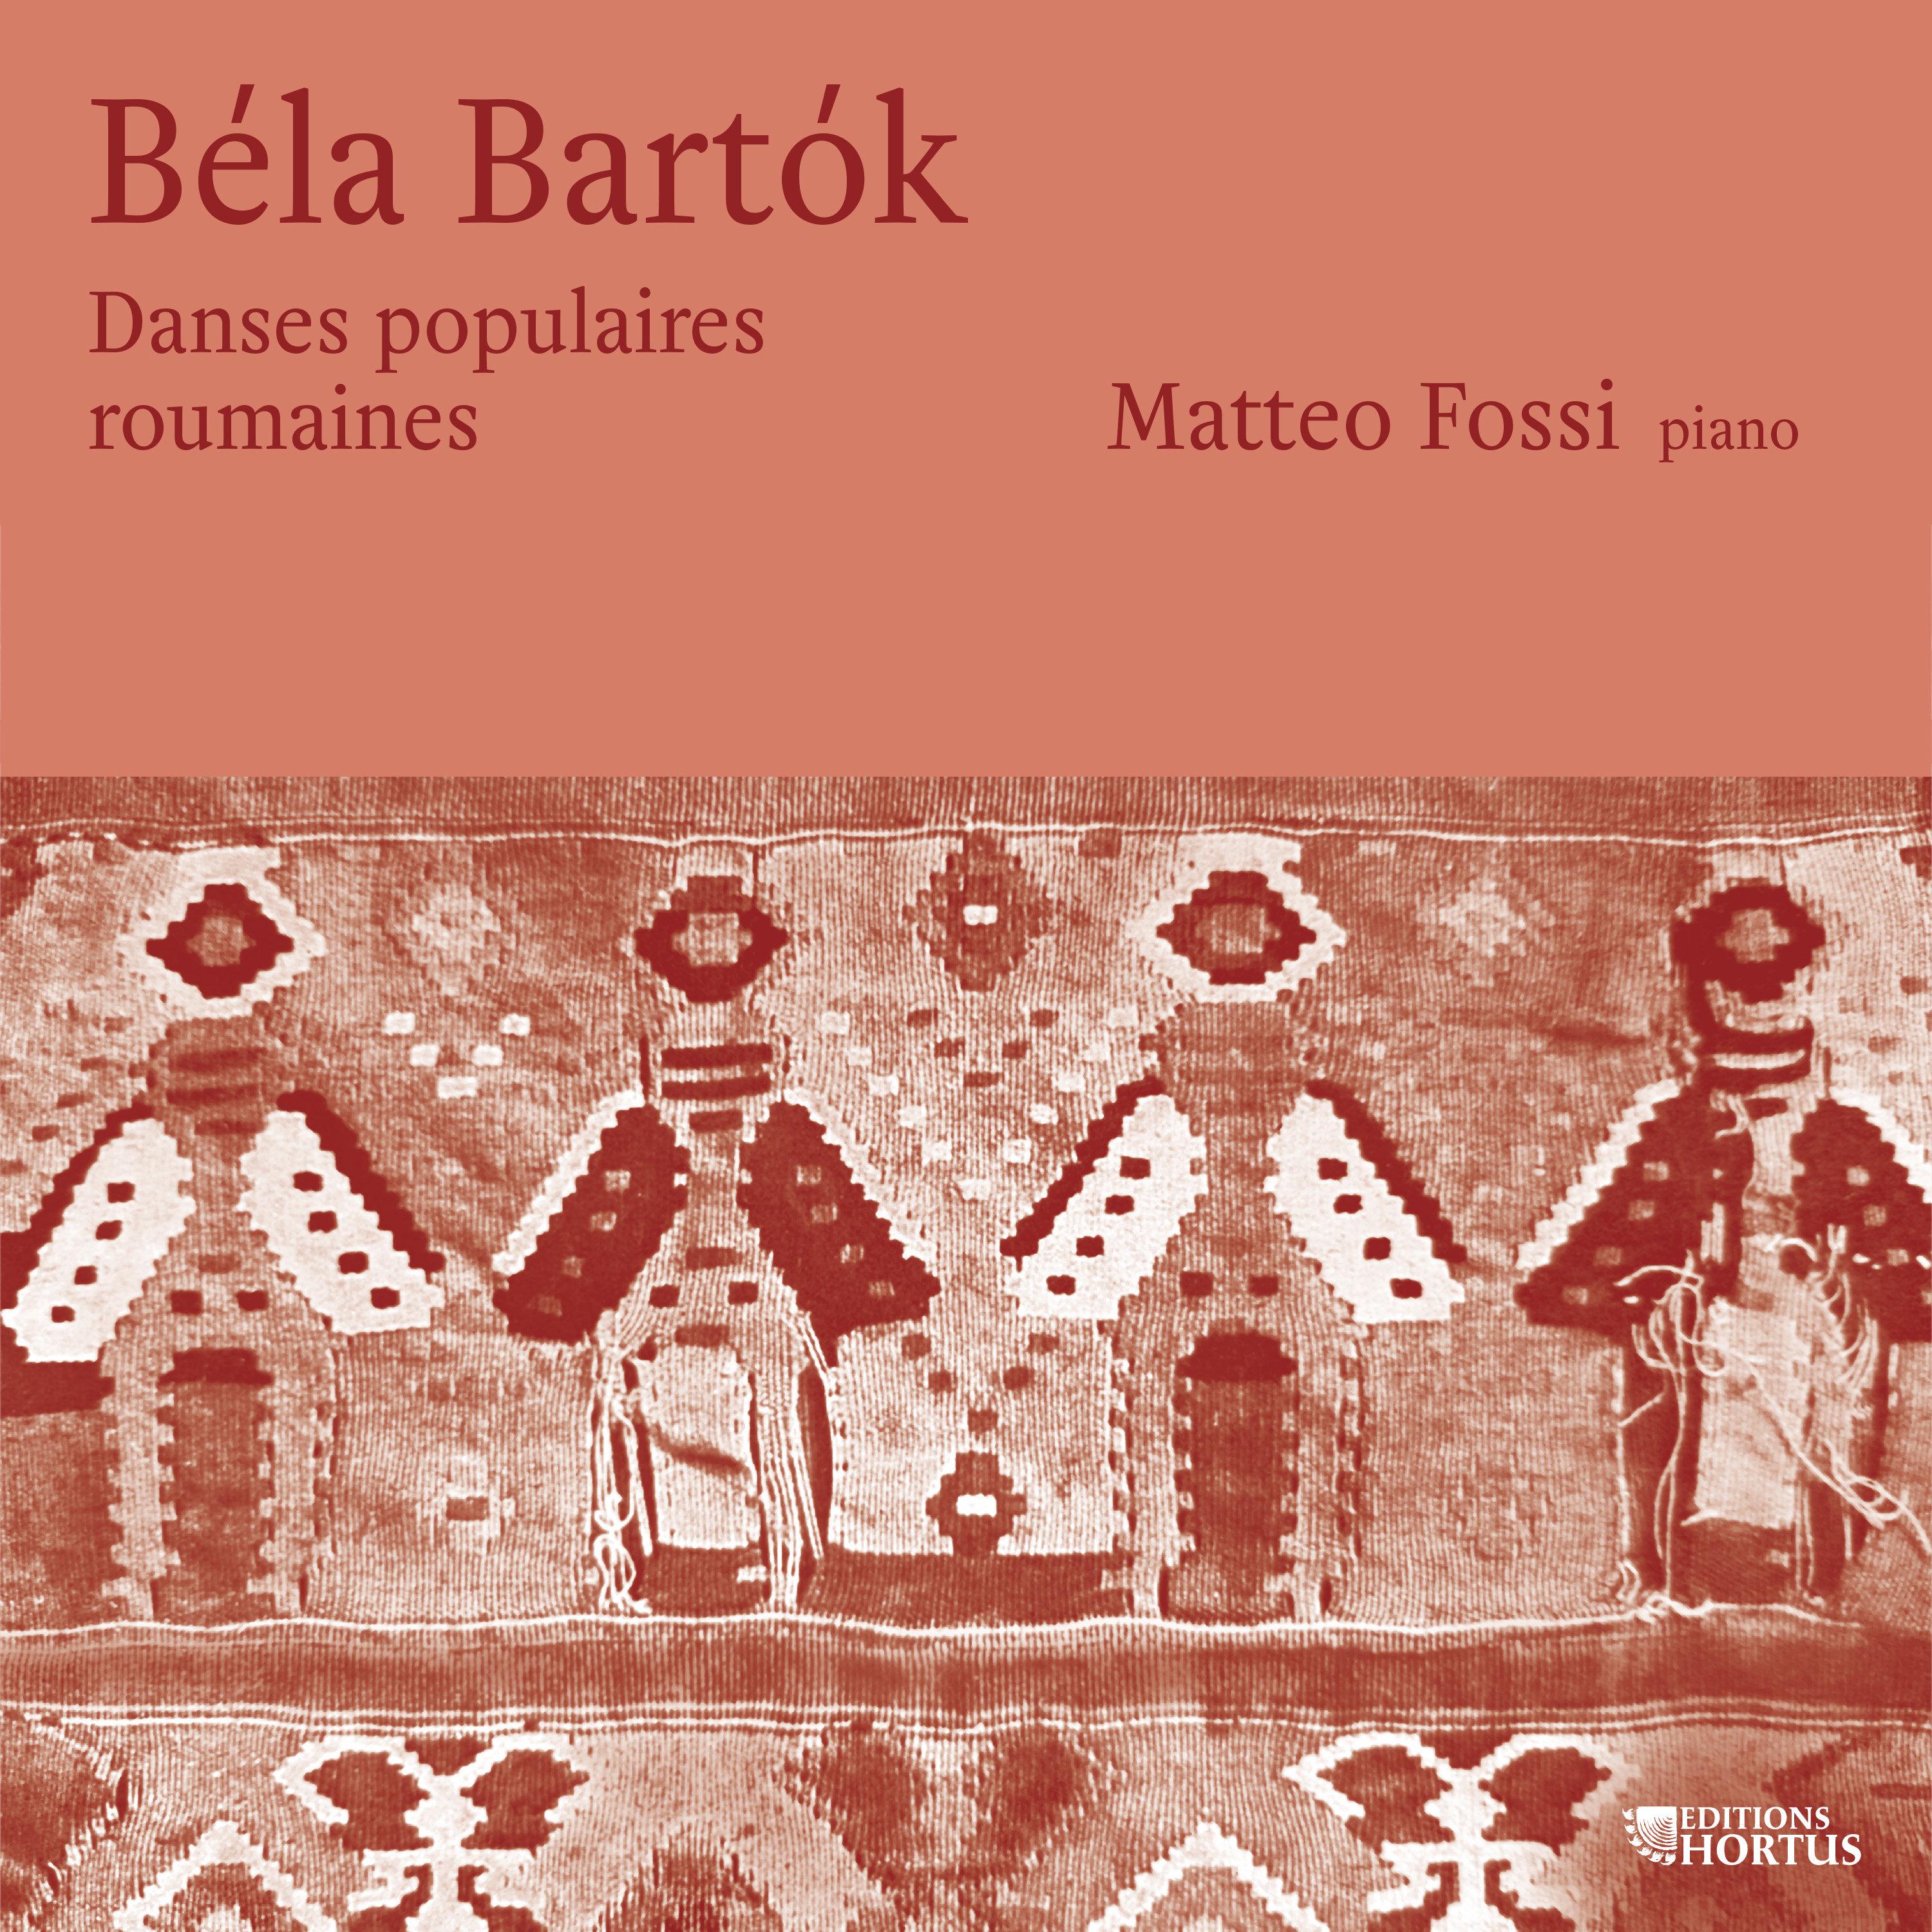 Matteo Fossi - Improvisations sur des chansons paysannes hongroises BB 83, Op. 20: VIII. Allegro